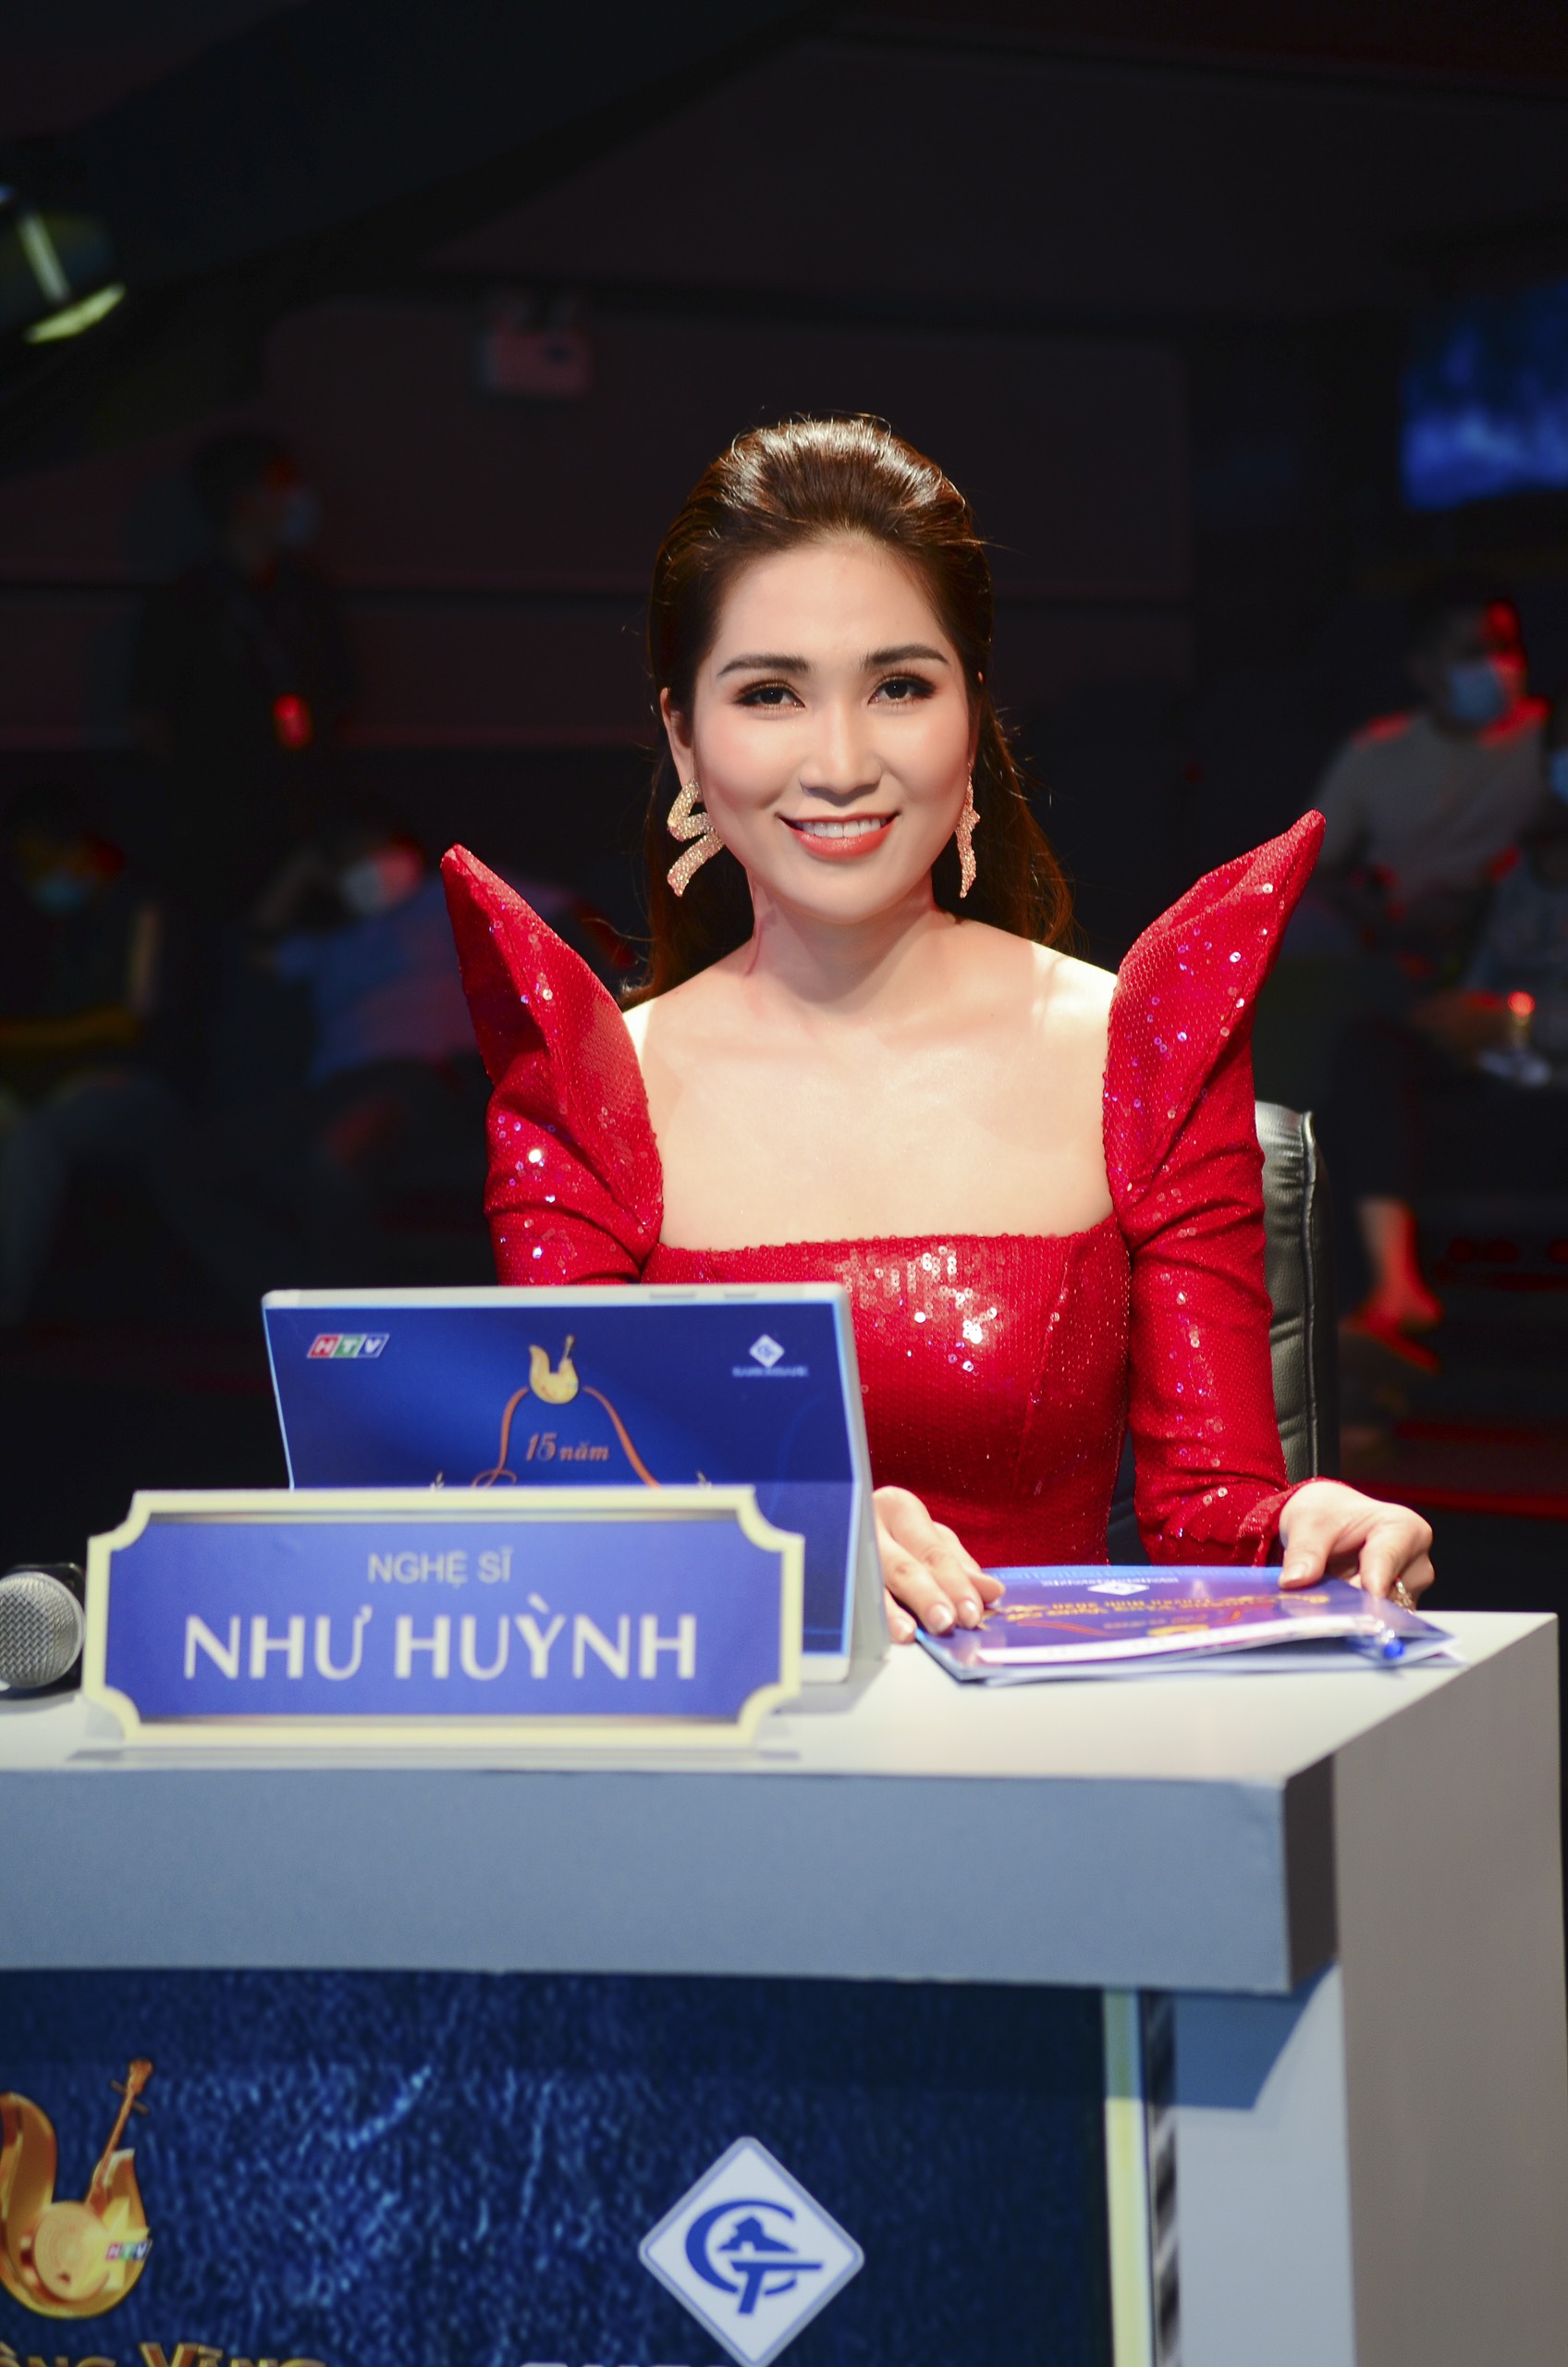 nhu huynh 7 1 Hoa hậu cải lương Như Huỳnh nổi bật trên ghế giám khảo với áo dài phá cách sang chảnh